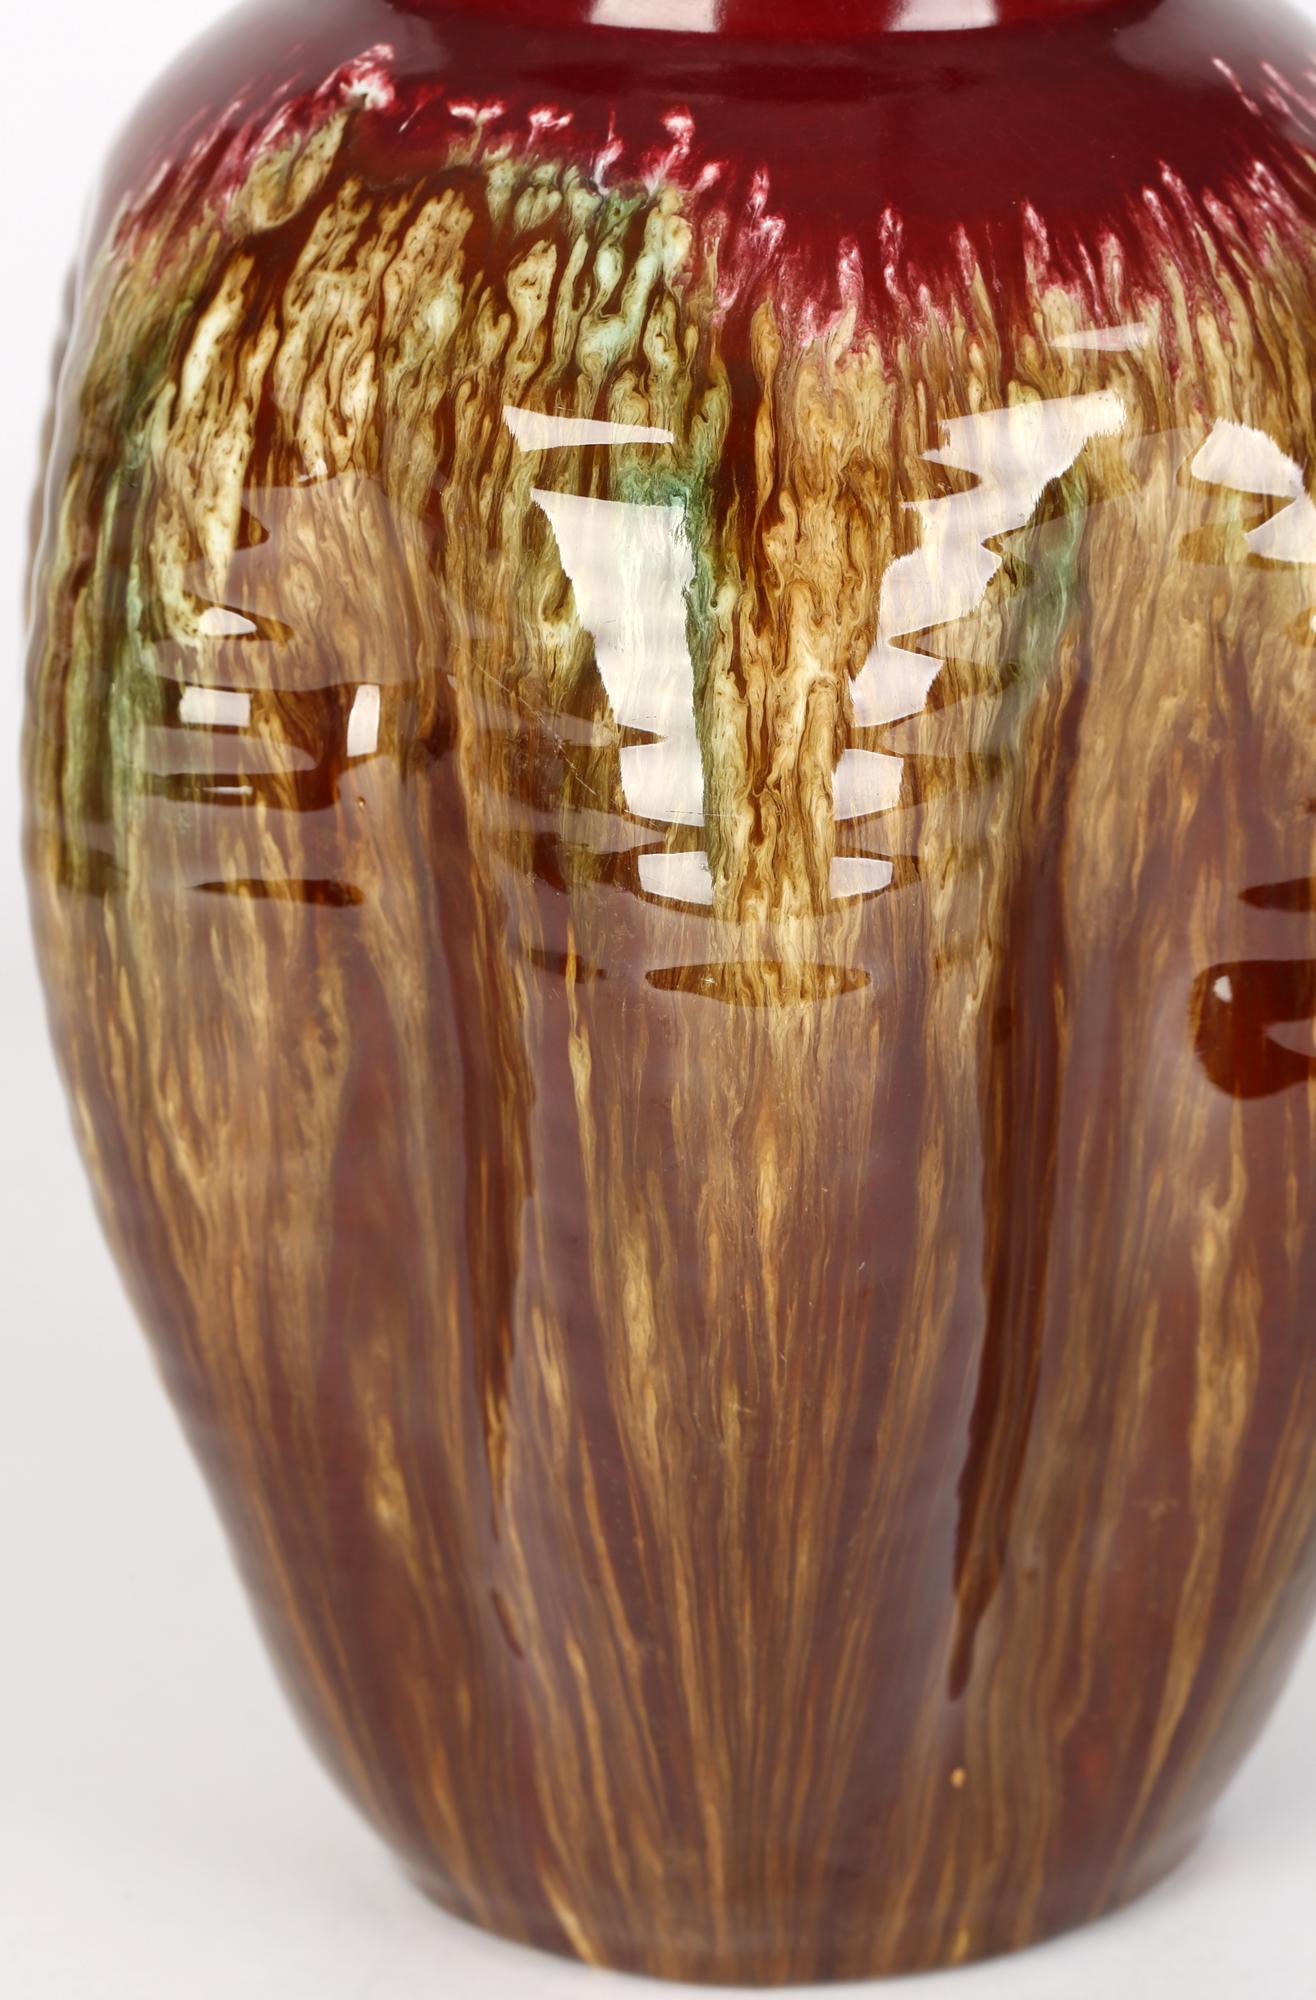 Un élégant vase attribué au mouvement esthétique Linthorpe, avec un corps pincé et émaillé en goutte d'eau, par Christopher Dresser (britannique, 1834-1904), datant d'environ 1885. Le vase en faïence rouge jeté à la main repose sur un pied étroit et